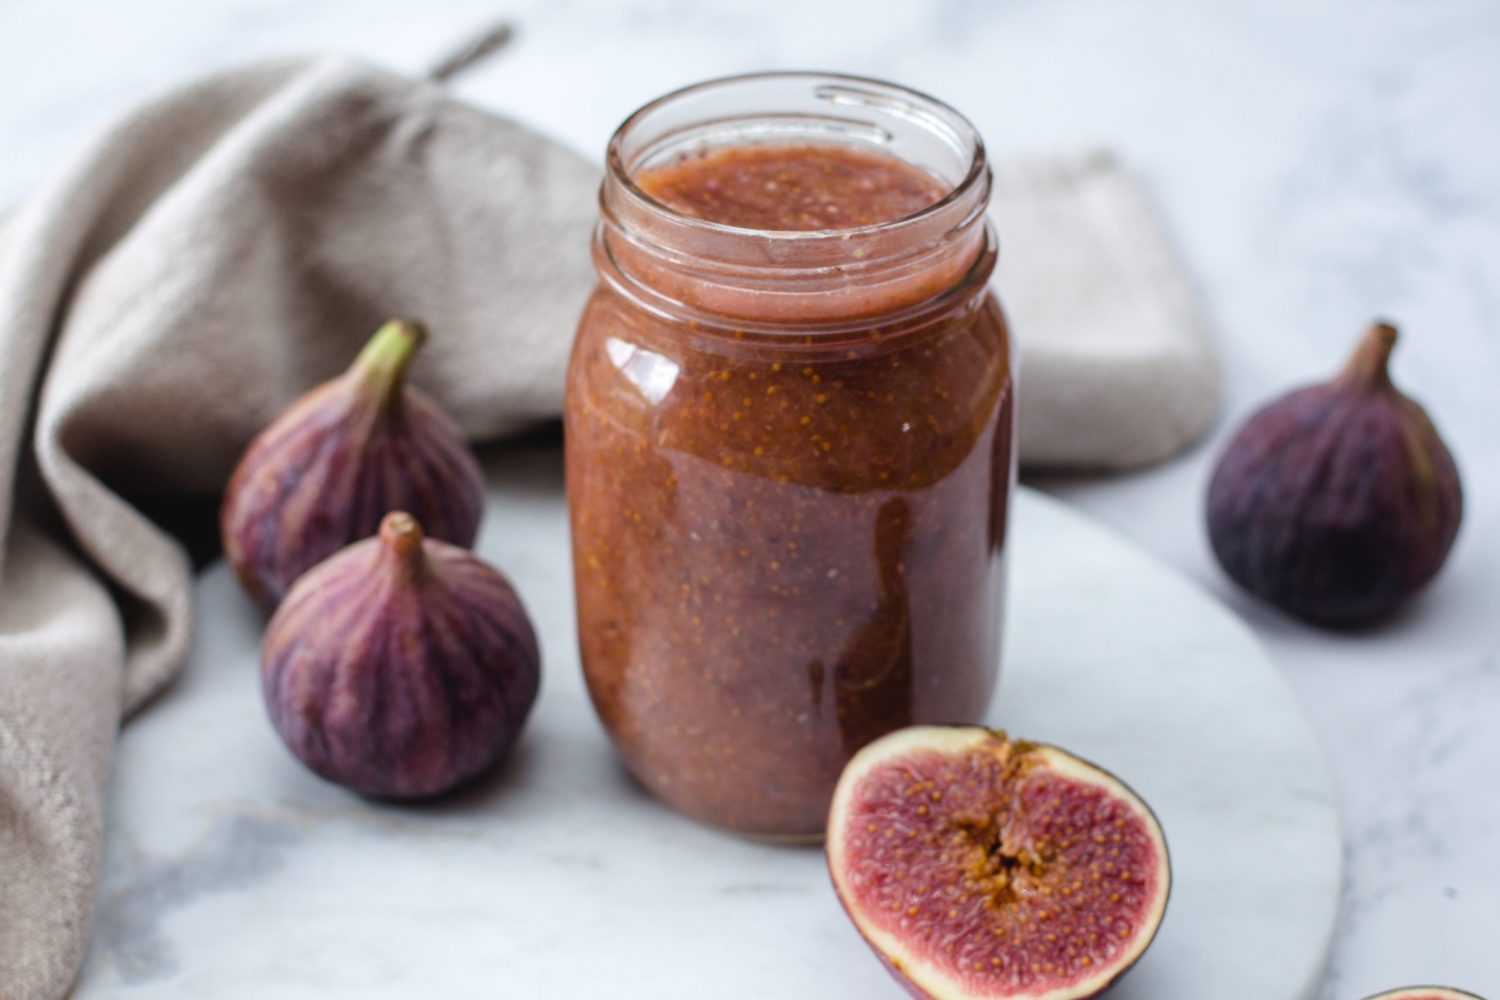 Fig jam in a jar alongside with fresh purple figs